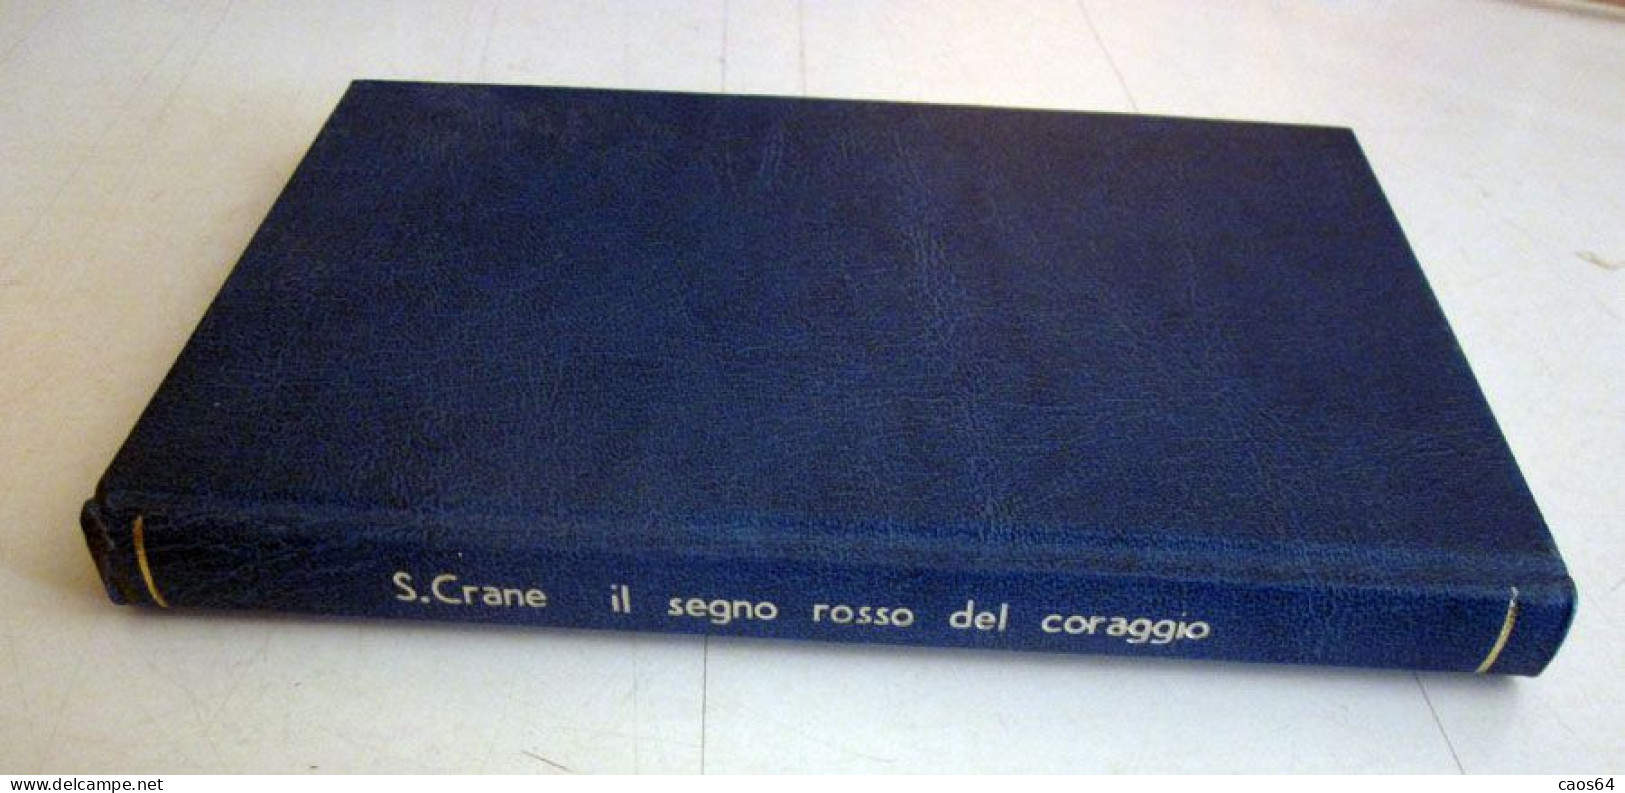 Il Segno Rosso Del Coraggio Stephen Crane Rizzoli BUR 1951 - Classiques